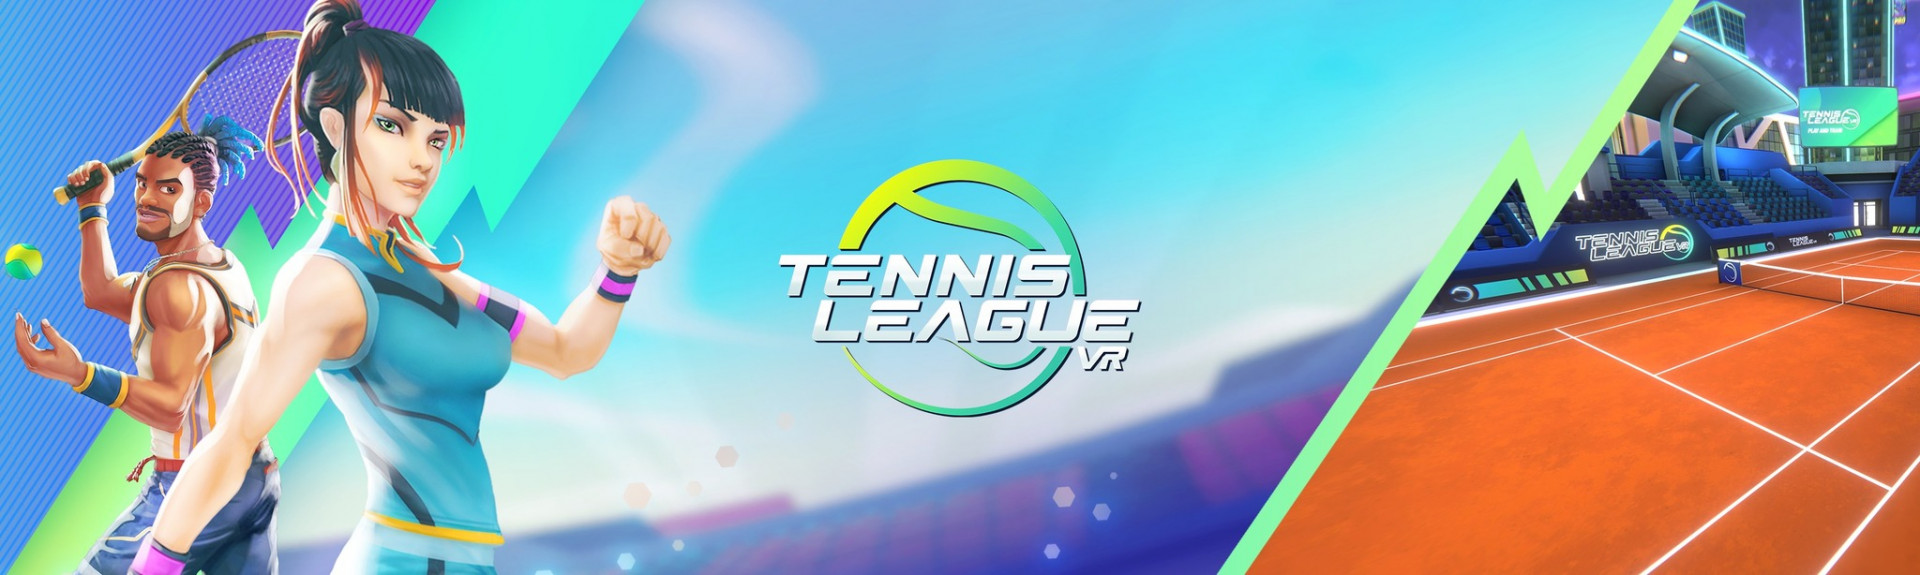 Tennis League VR: ANÁLISIS